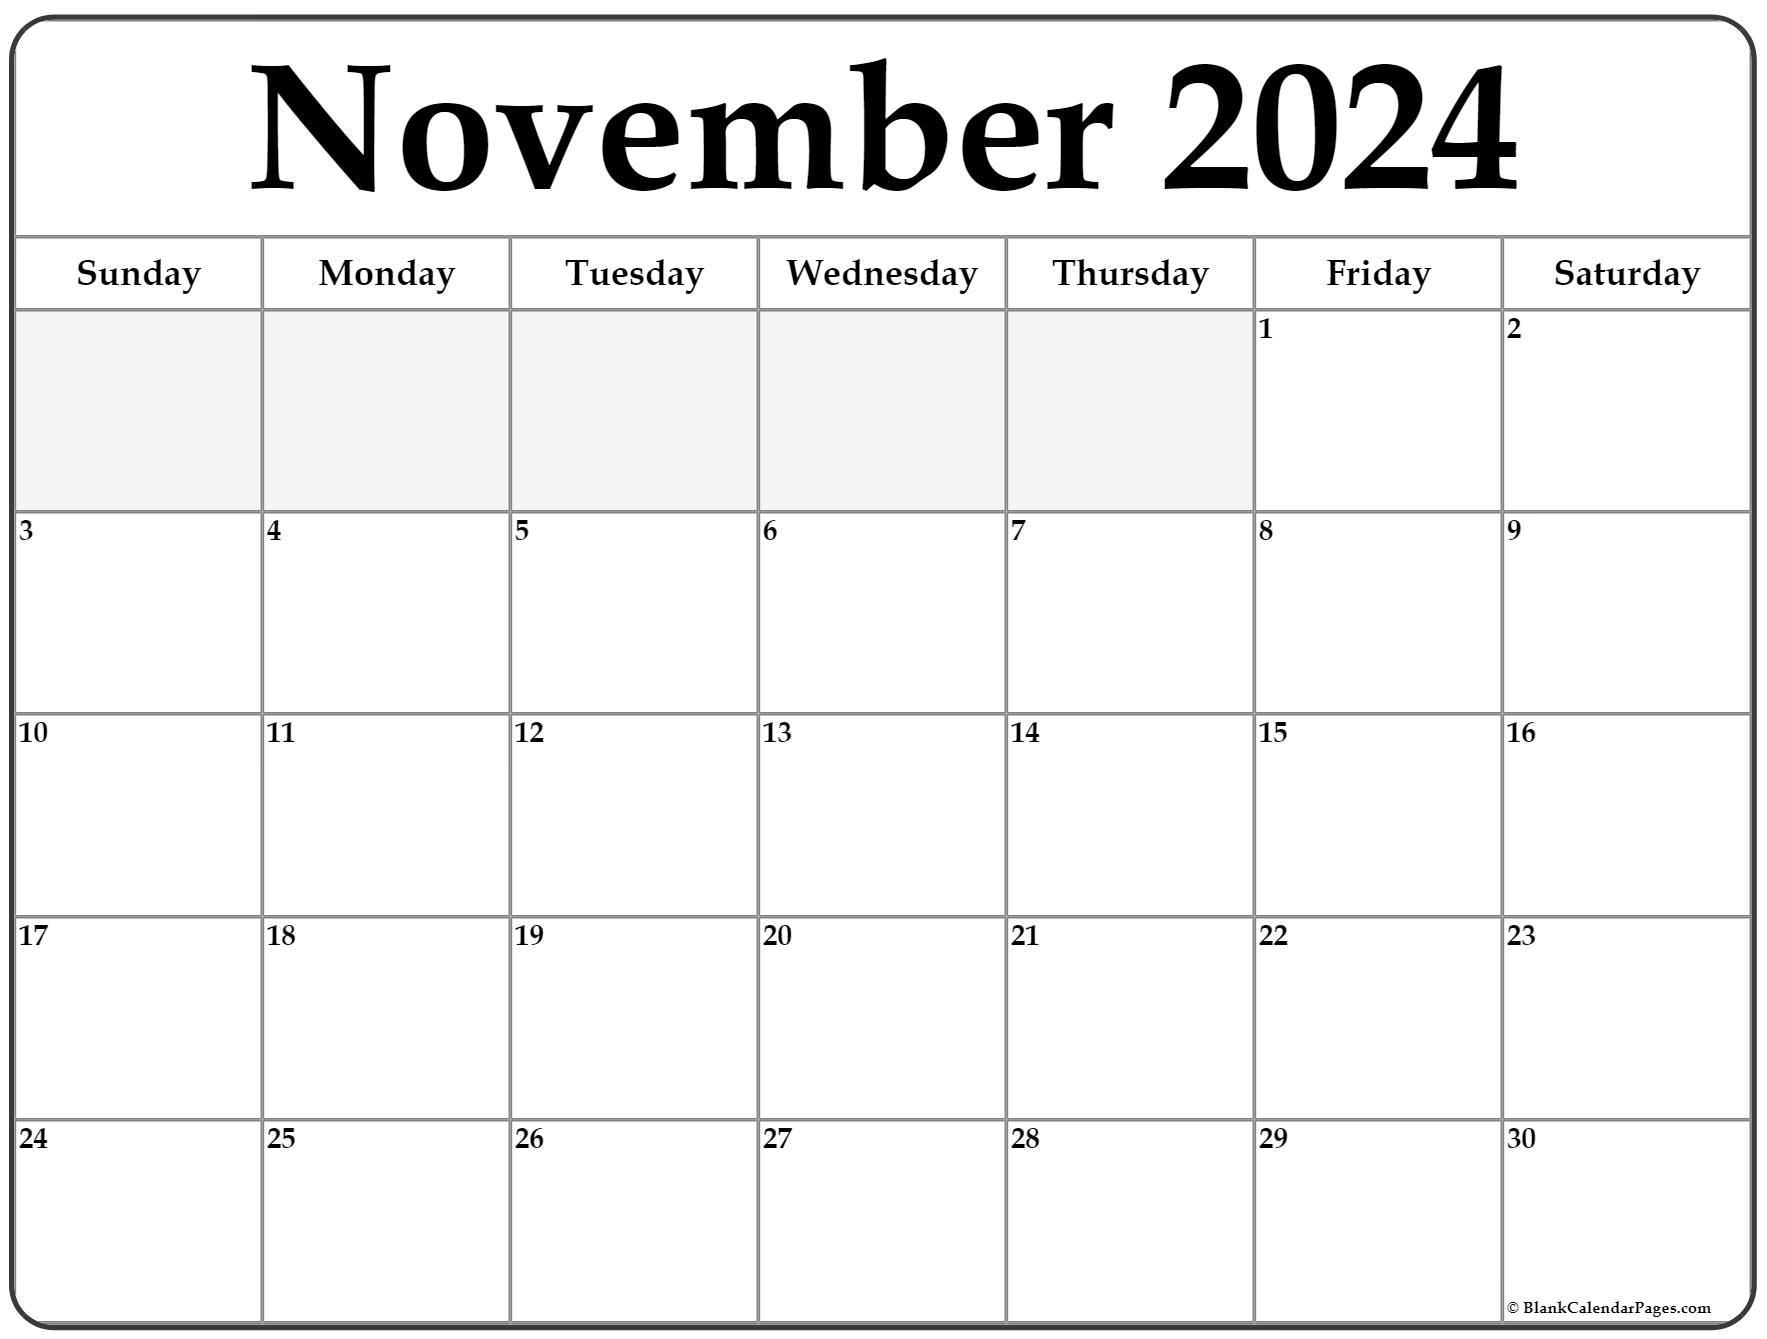 November Calendar Printable 2022 November 2022 Calendar | Free Printable Calendar Templates